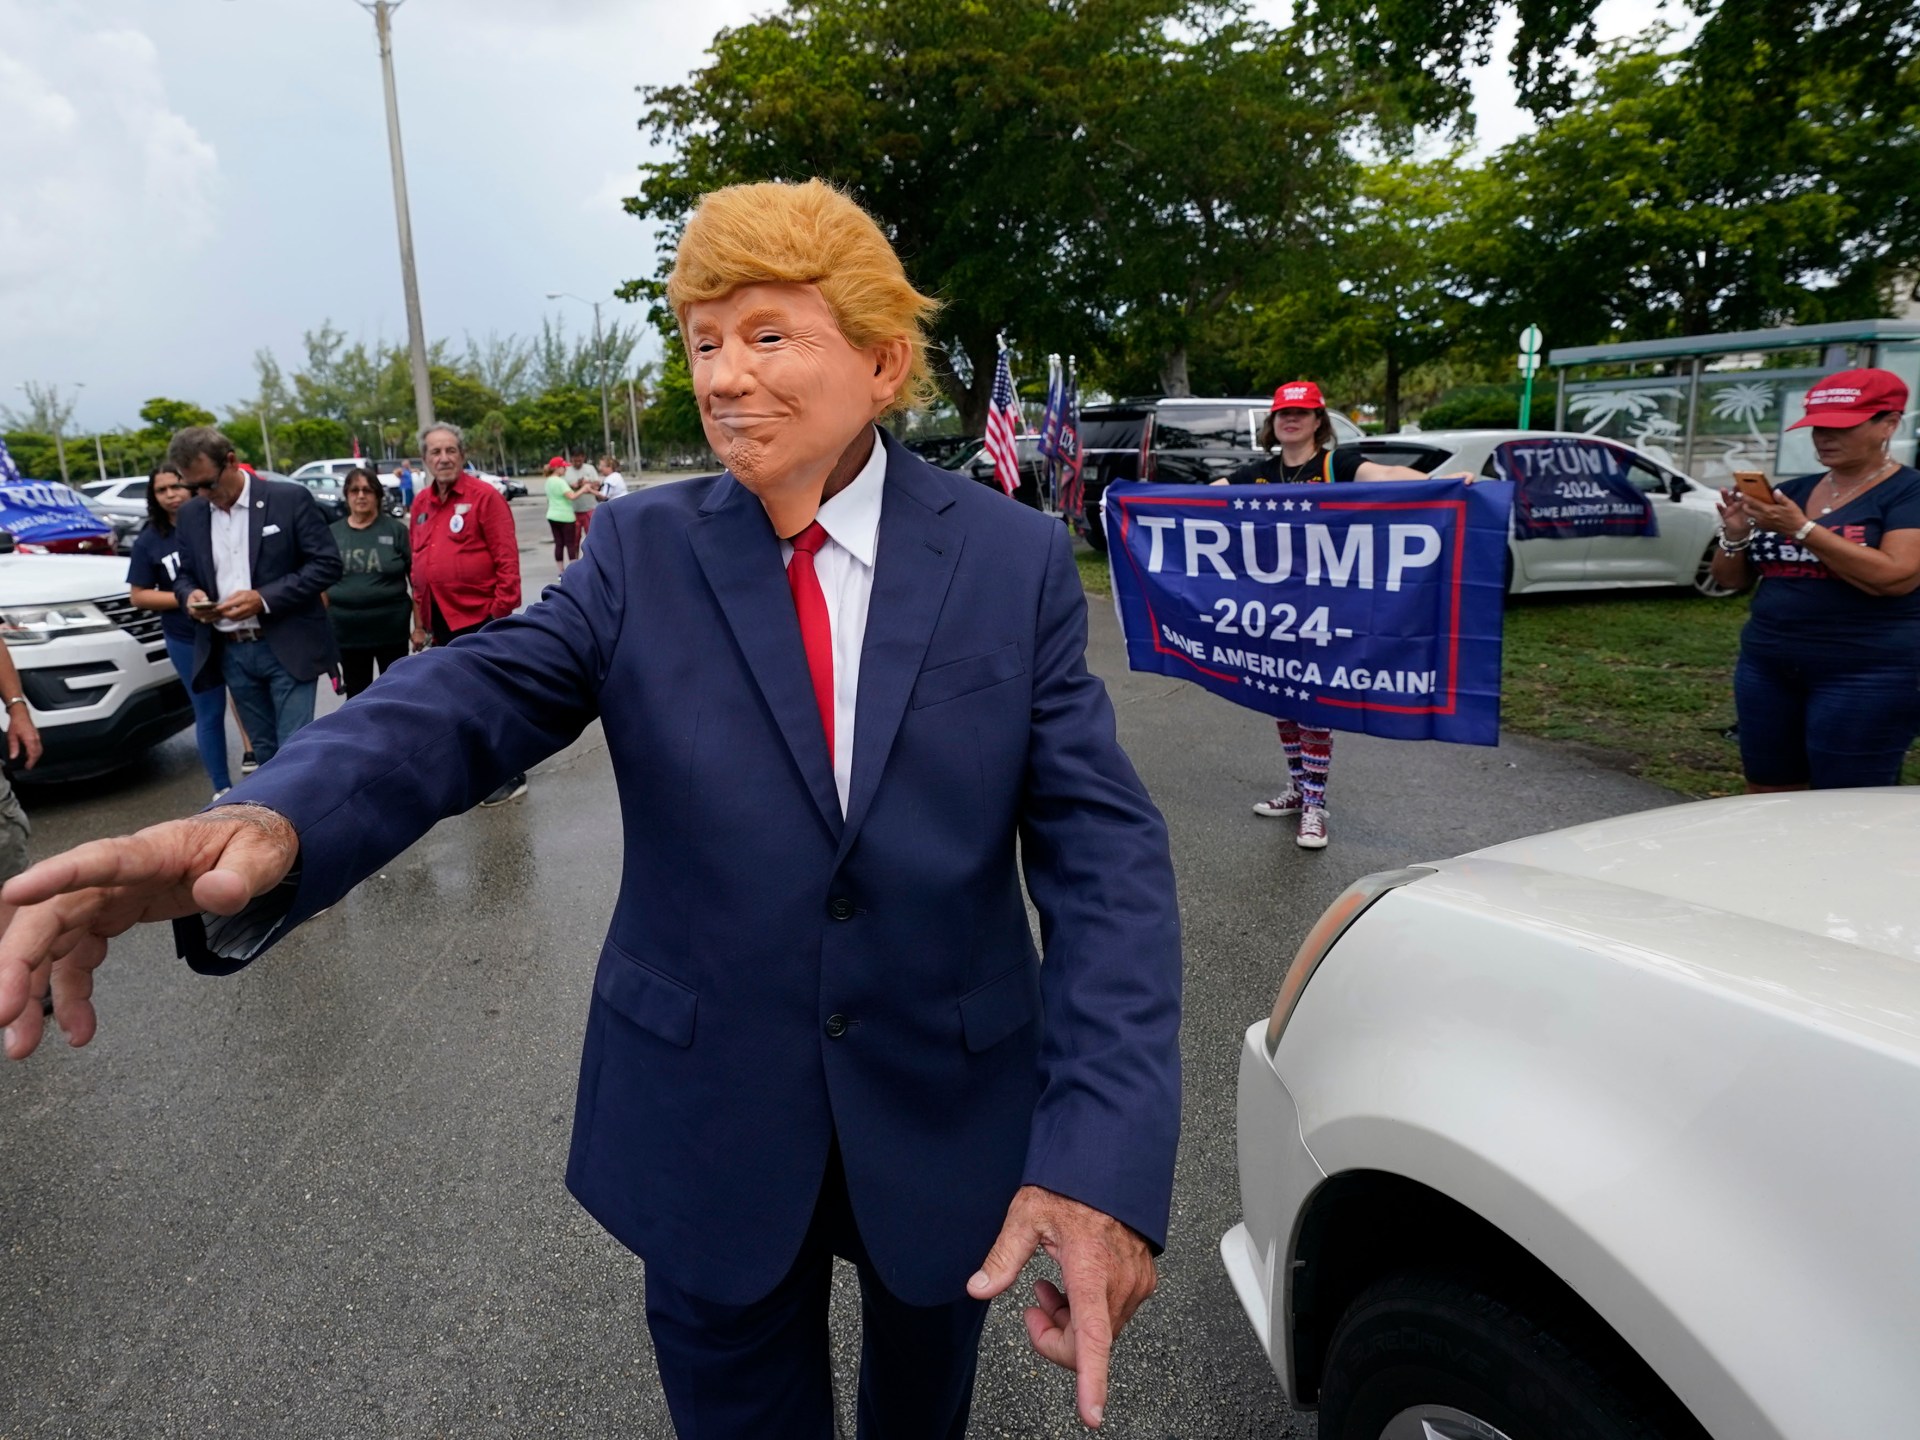 Lima hal yang diharapkan dari penampilan Trump di pengadilan Florida |  Berita Donald Trump